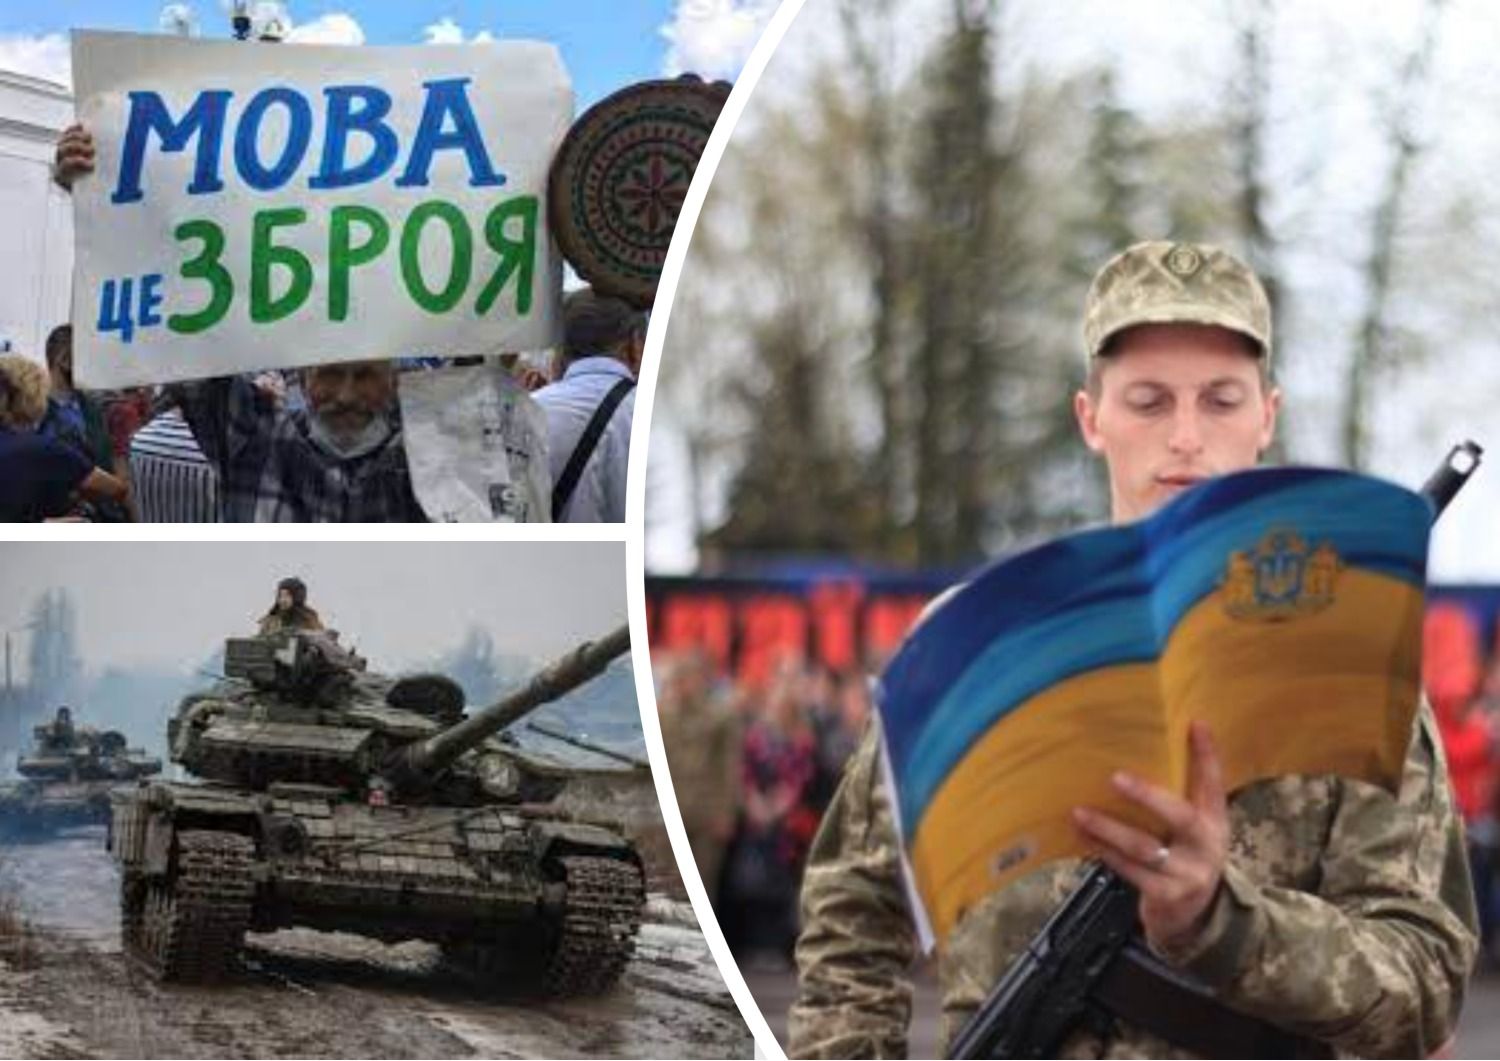 Антисуржик - мобилизация - как правильно говорить по-украински о службе в ВСУ - 24 Канал - Образование